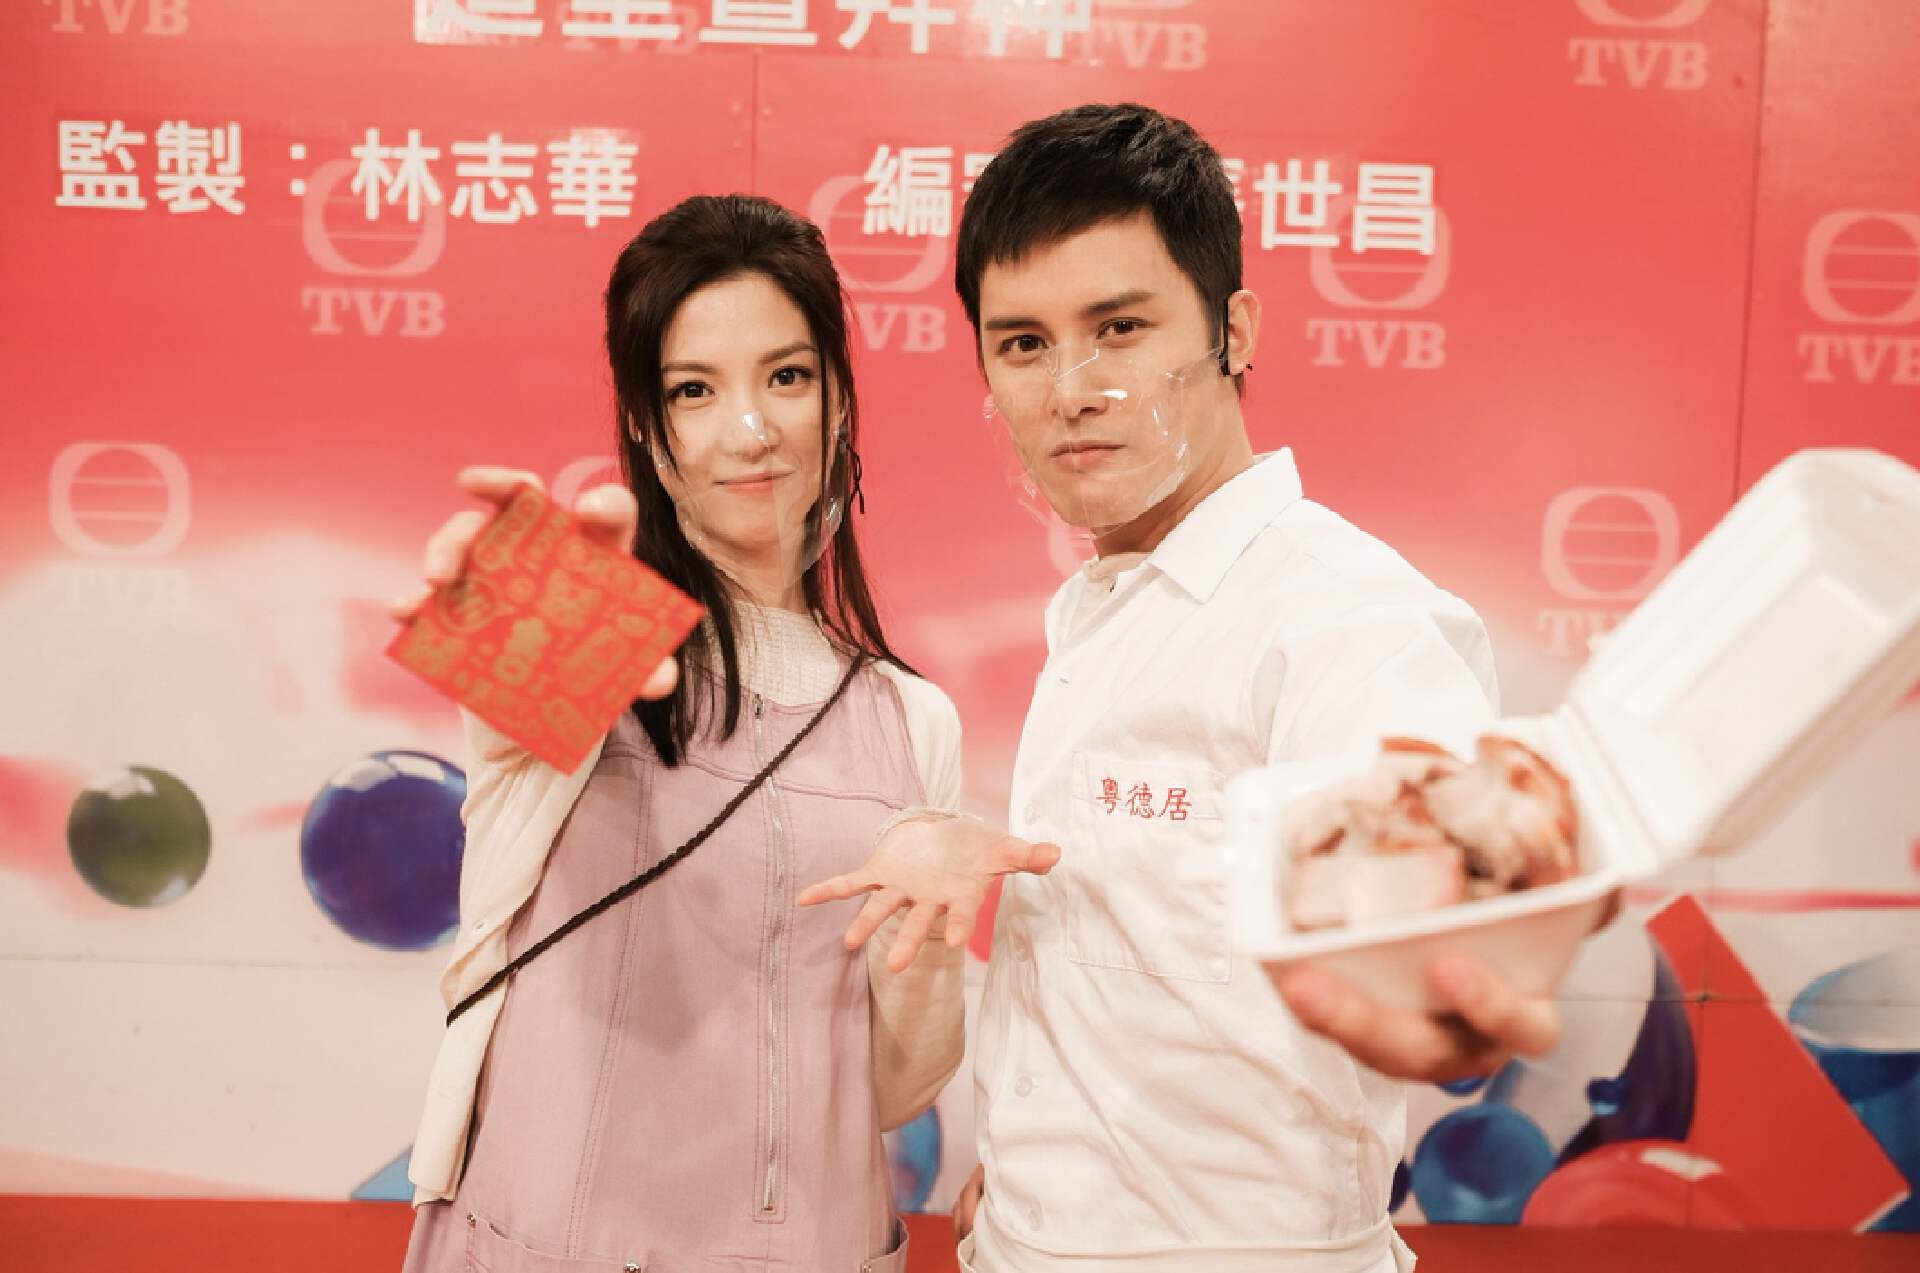 恭喜！TVB知名男星被曝恋上高颜值港姐冠军，双方异性缘都极佳